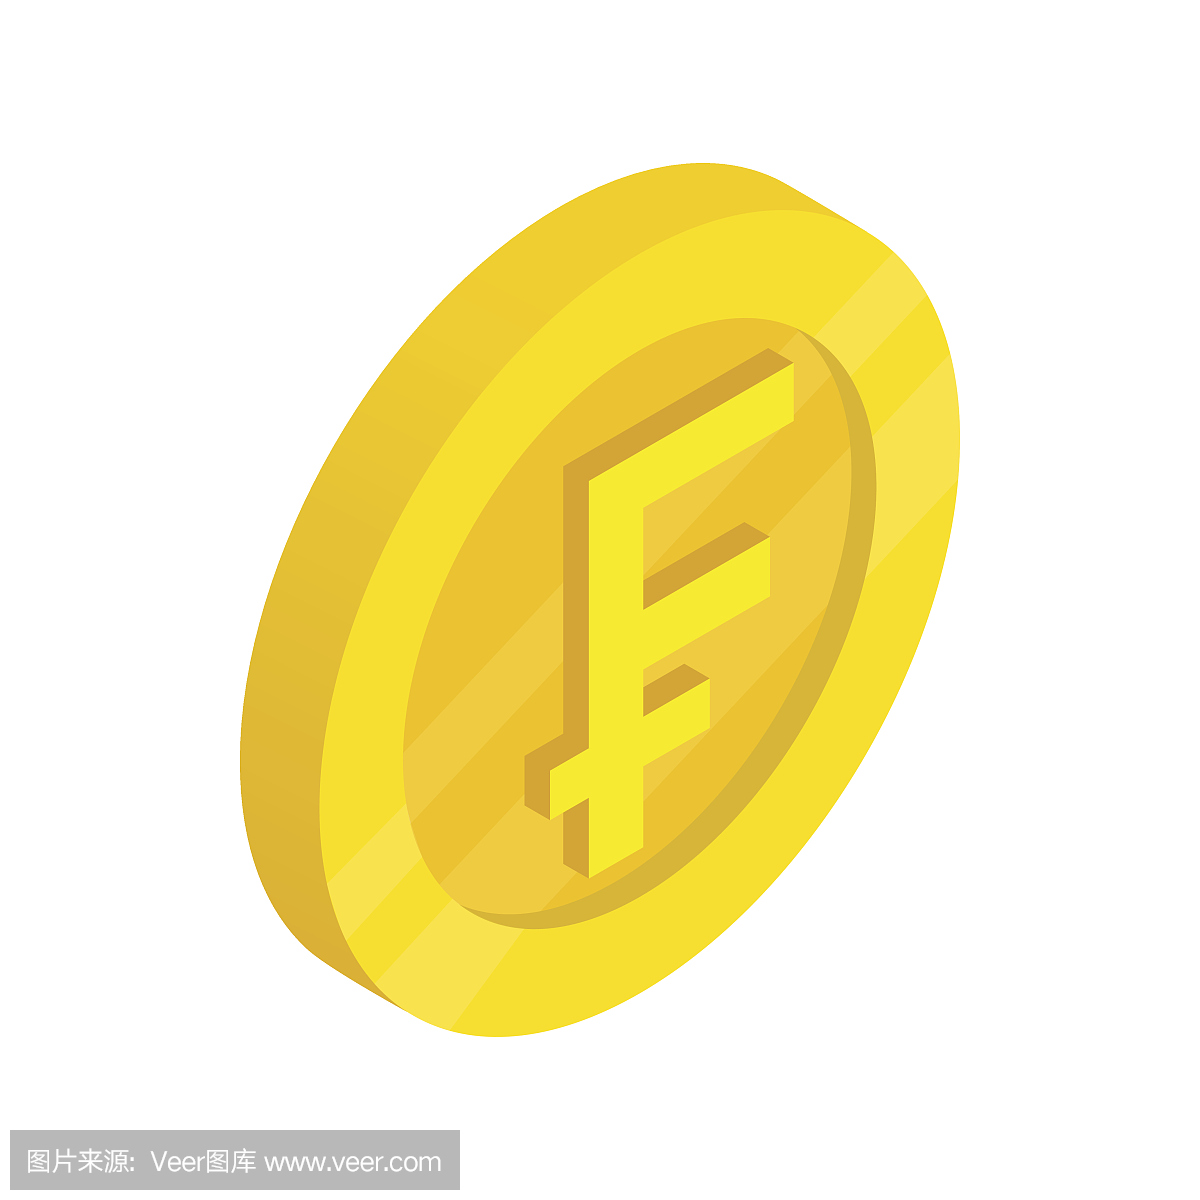 法郎符号,法国法郎,比利时法郎货币单位,比利时